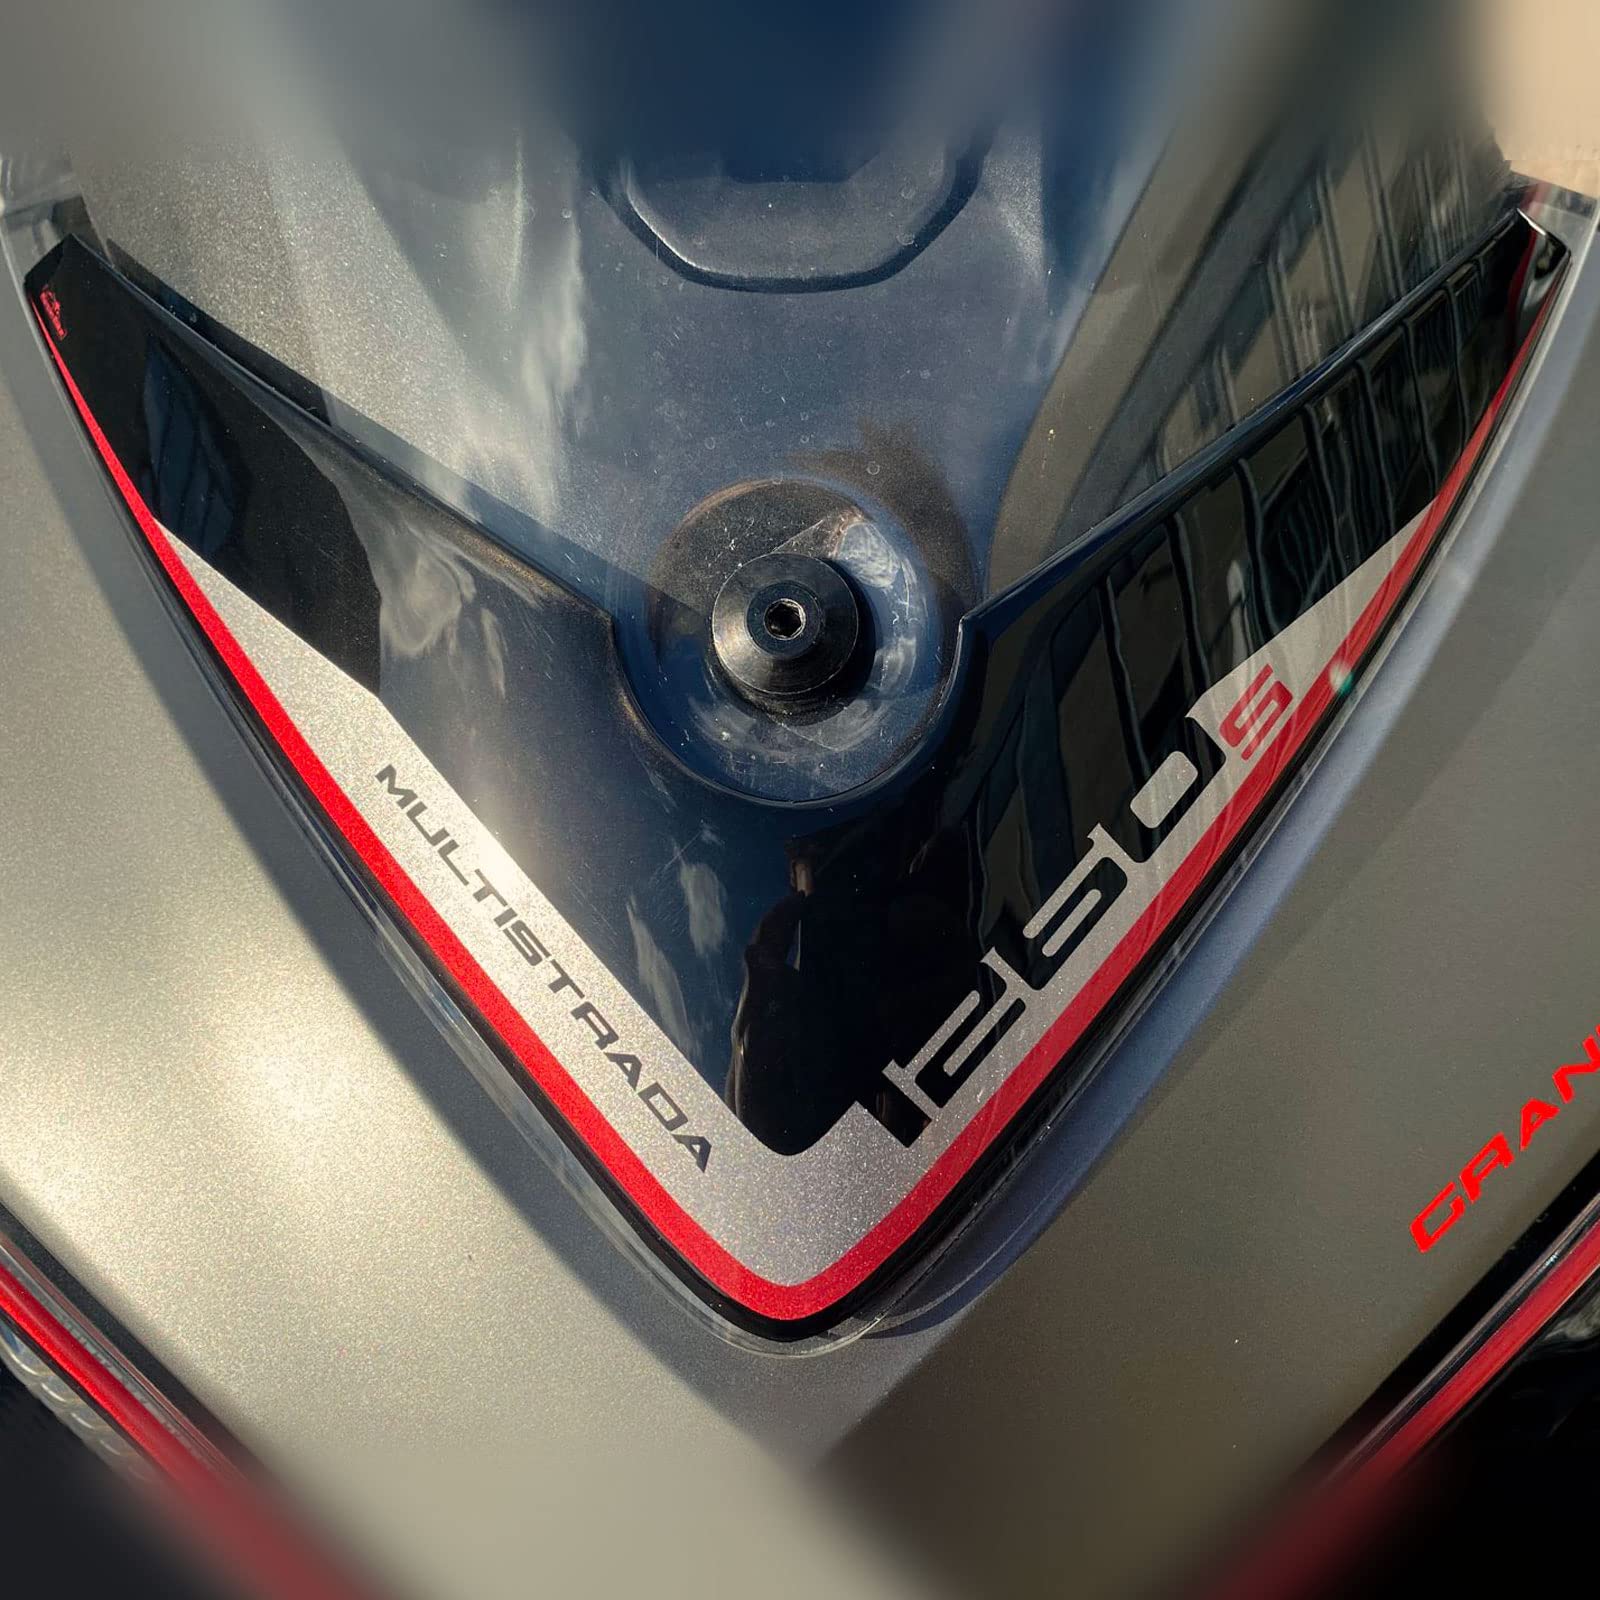 Resin Bike Aufkleber für Motorrad Kompatibel mit Ducati Multistrada 1260 S Grand Tour 2018-2020 Sandstone Grau. Windschildschutz vor Stößen und Kratzern. 3D-Harzklebstoff - Stickers - Made in Italy von Resin Bike